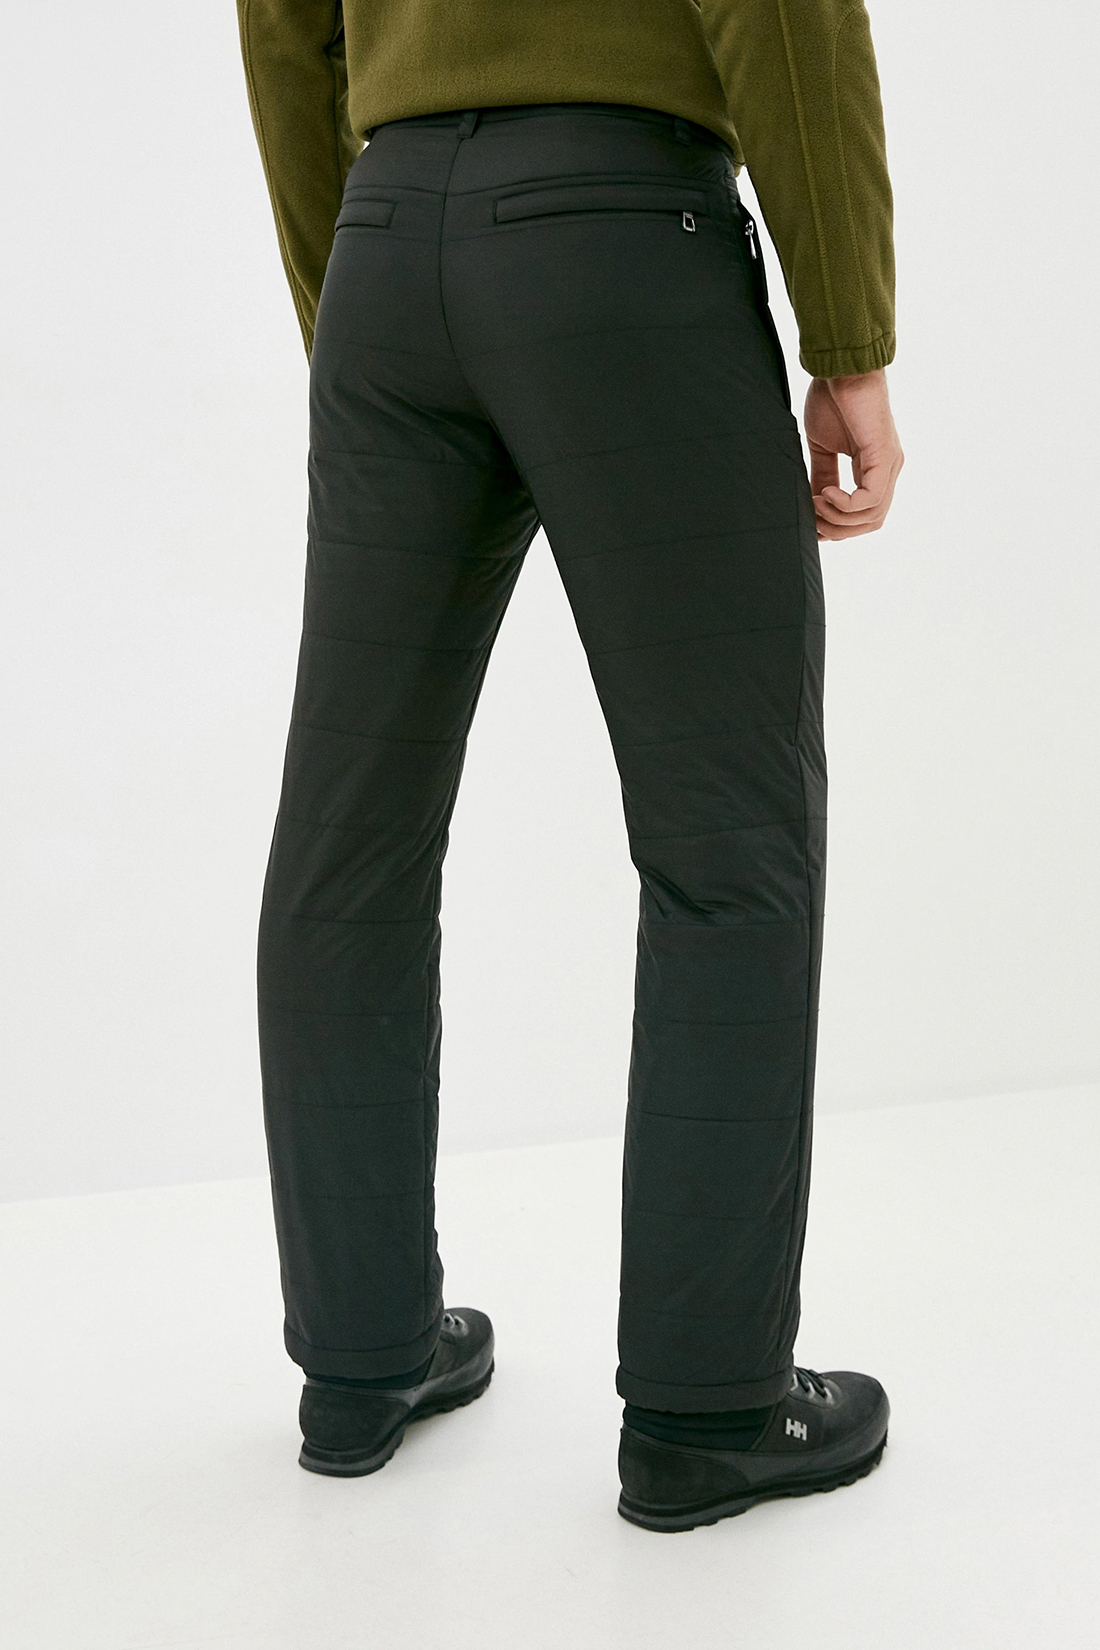 Утеплённые брюки с подкладкой из флиса (арт. baon B799522), размер 3XL, цвет черный Утеплённые брюки с подкладкой из флиса (арт. baon B799522) - фото 2